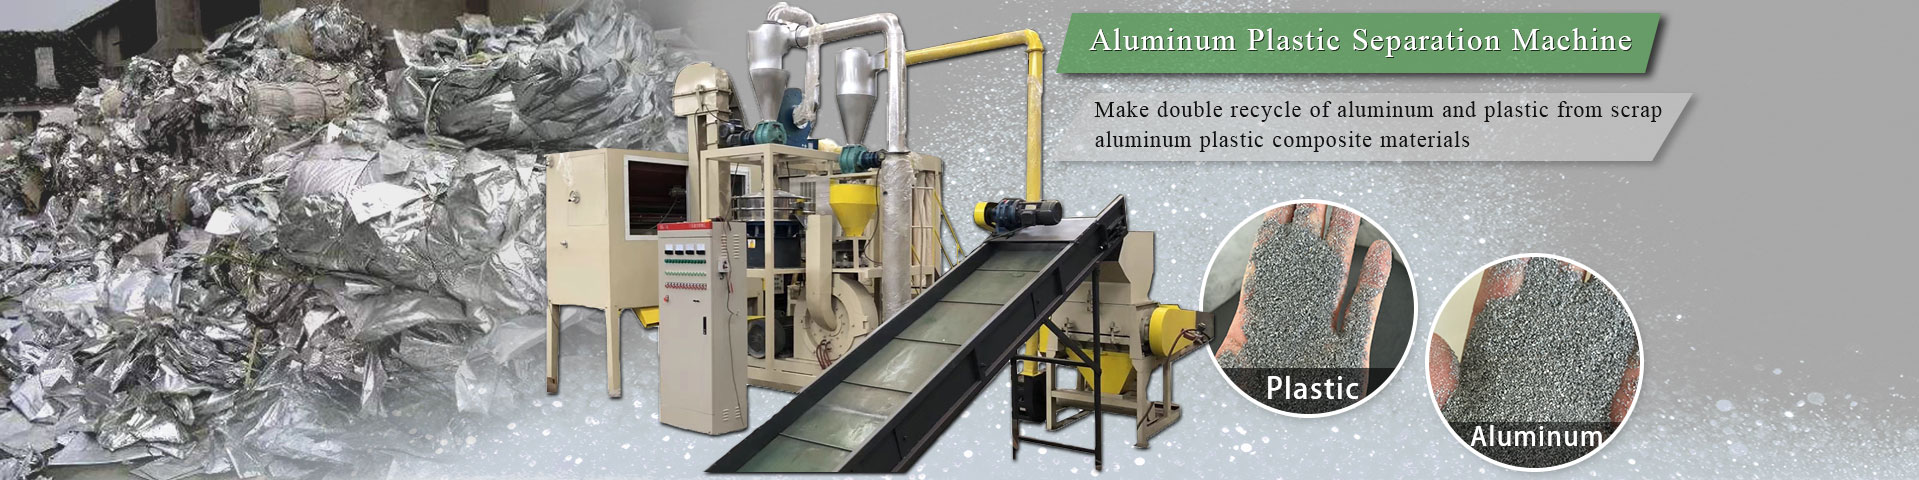 Aluminum plastic separation machine